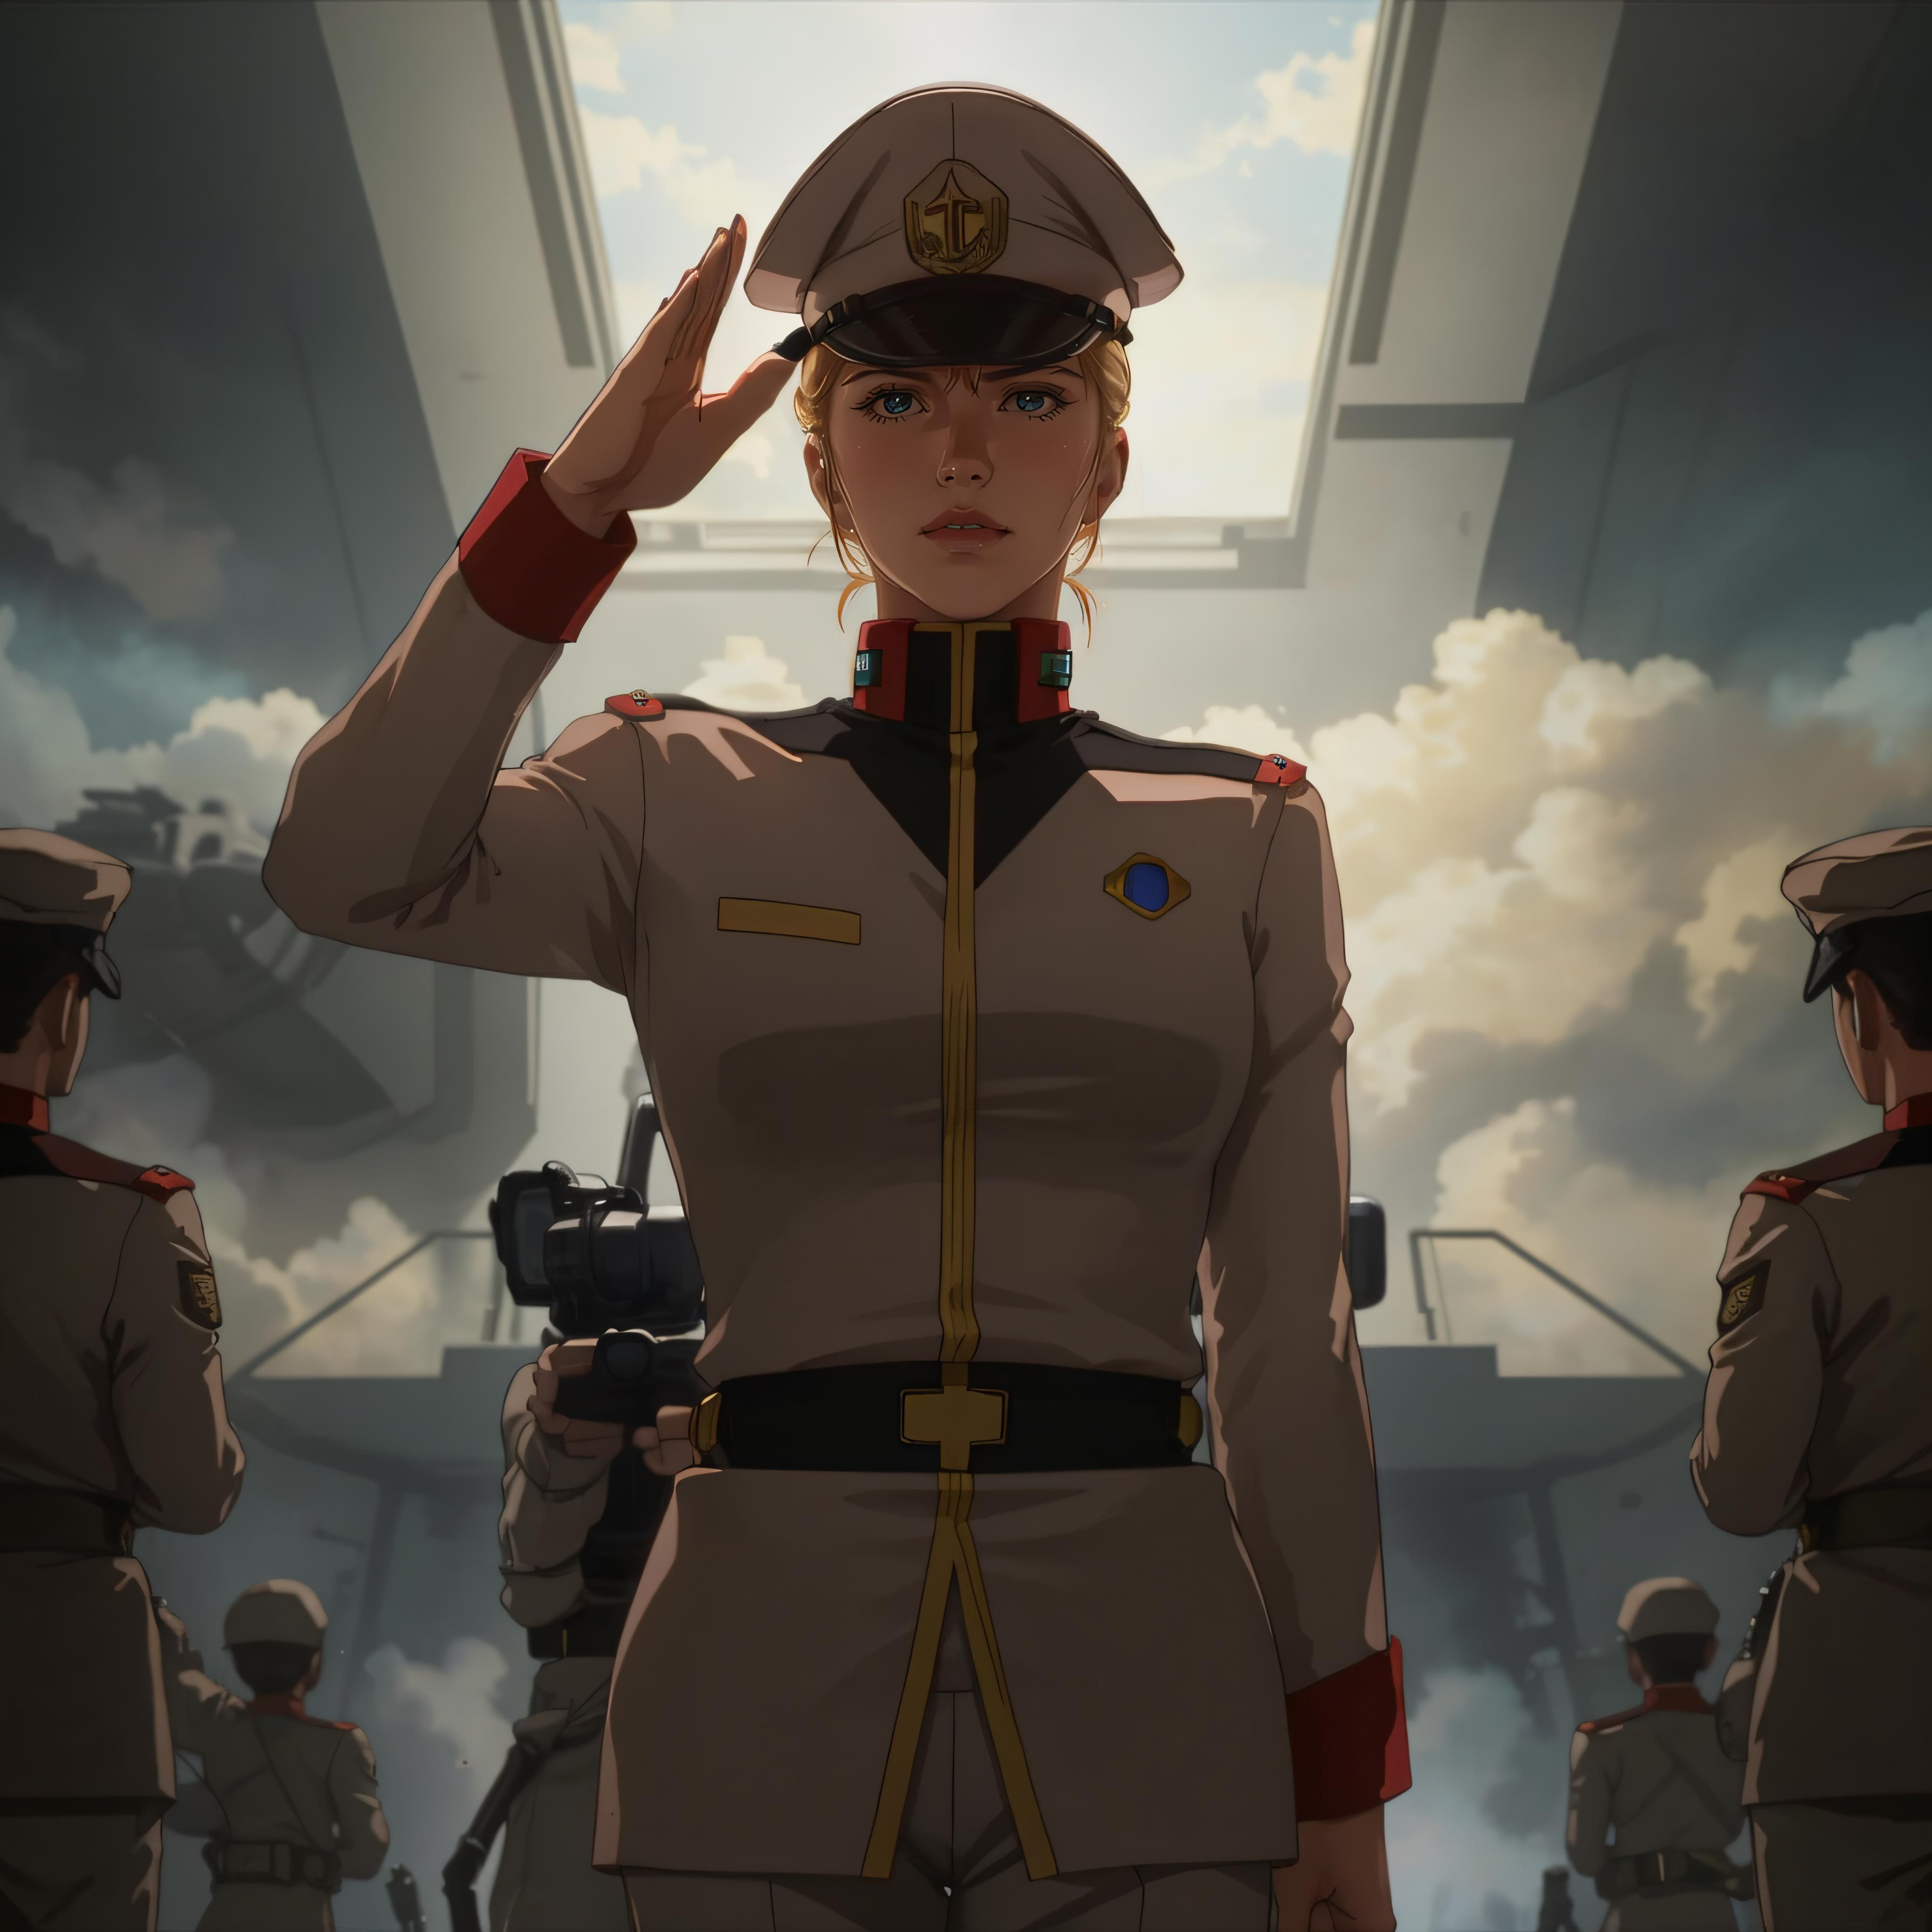 EFF Officer (Mobile Suit Gundam) image by RubiWanJinn